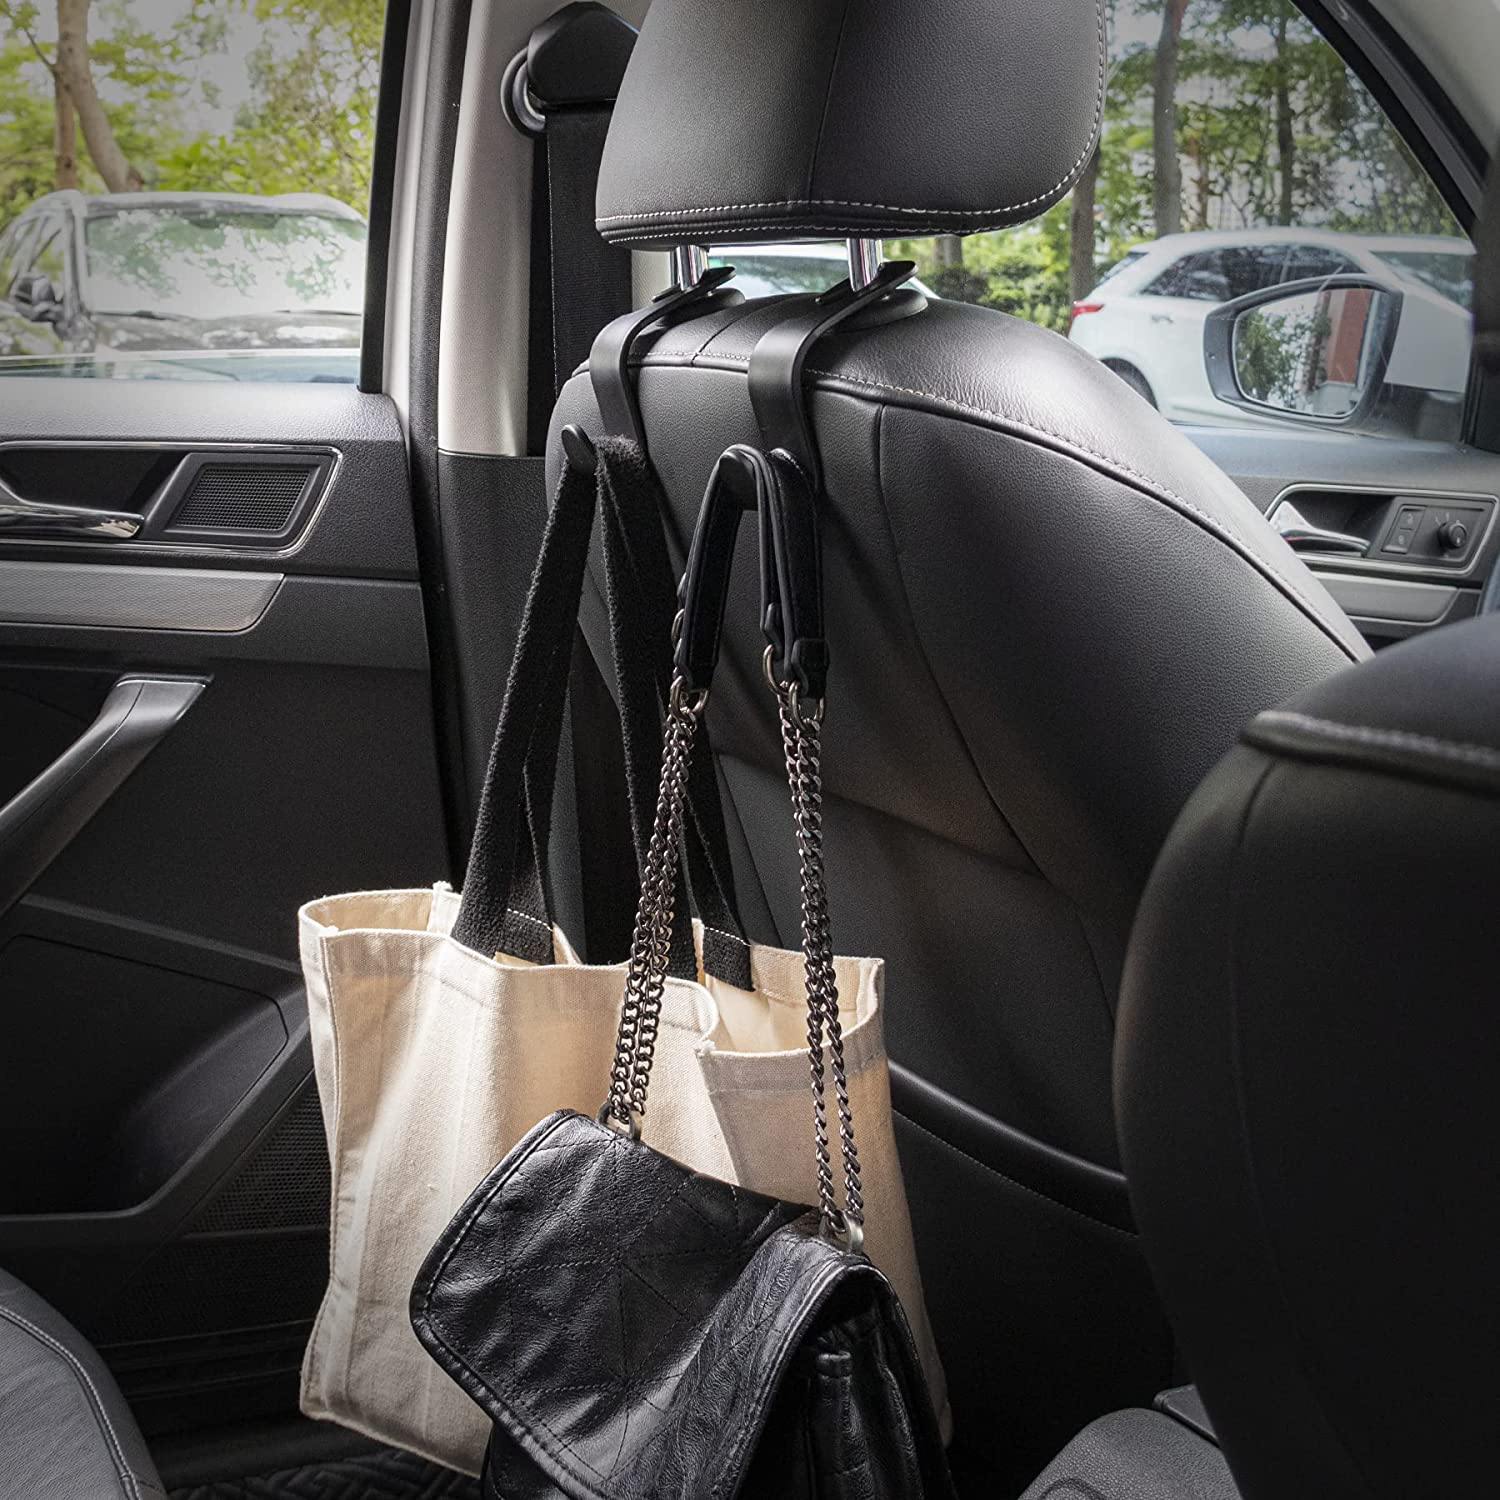 The Purse Net Car Net Pocket Handbag Holder Between Seats w/4 Grocery Bag  Headrest Hooks | Purse Holder for Car | Net Car Handbag Holder w/2 Cargo